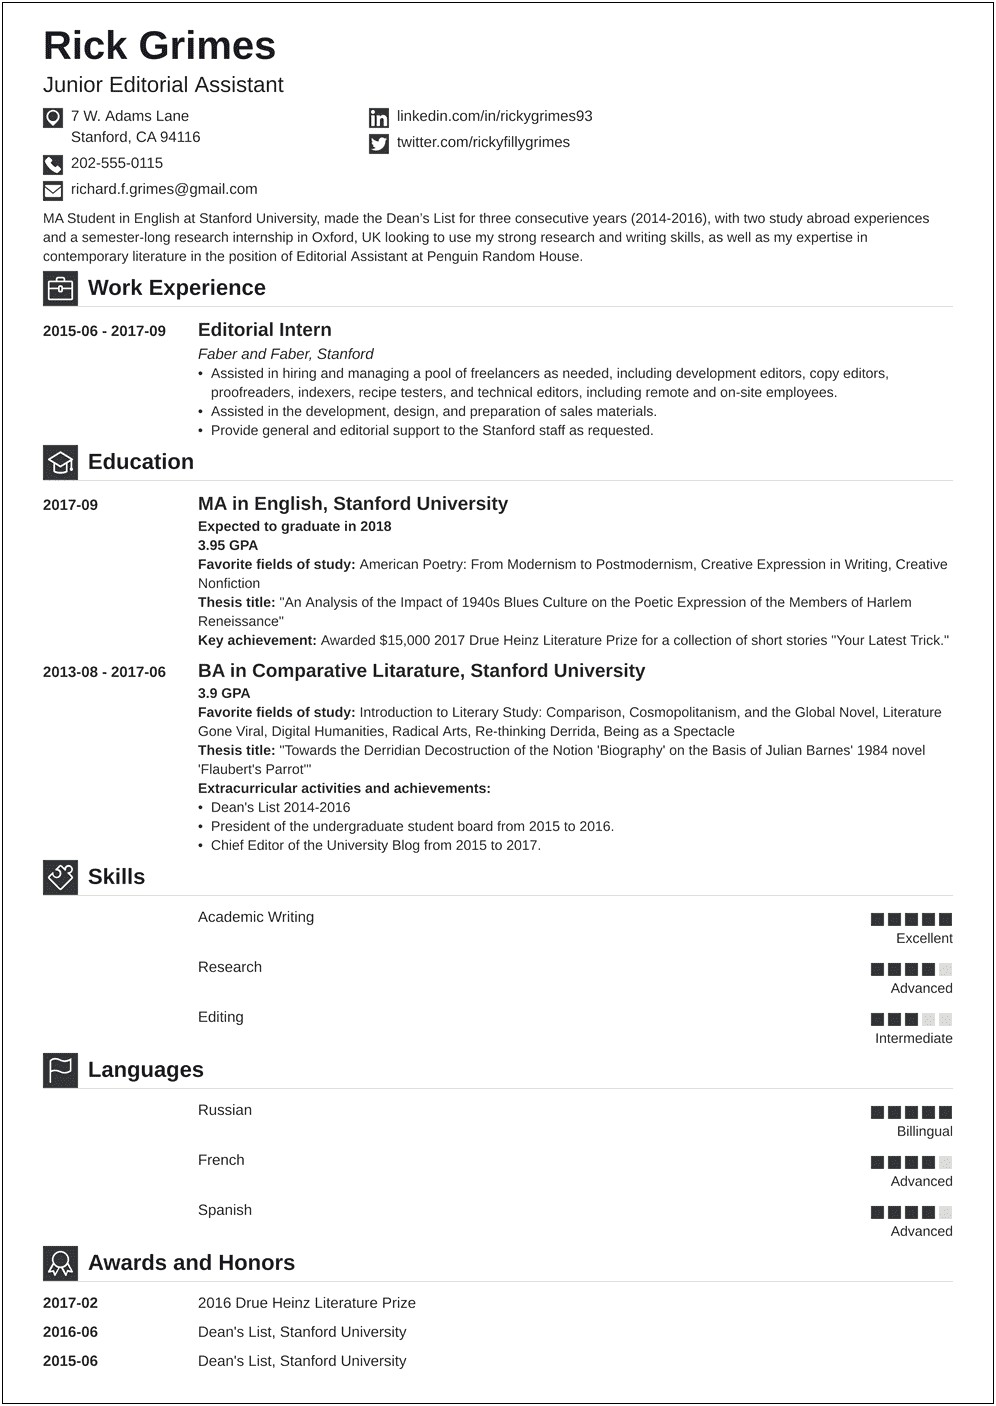 Sample Resume Format For Beginners